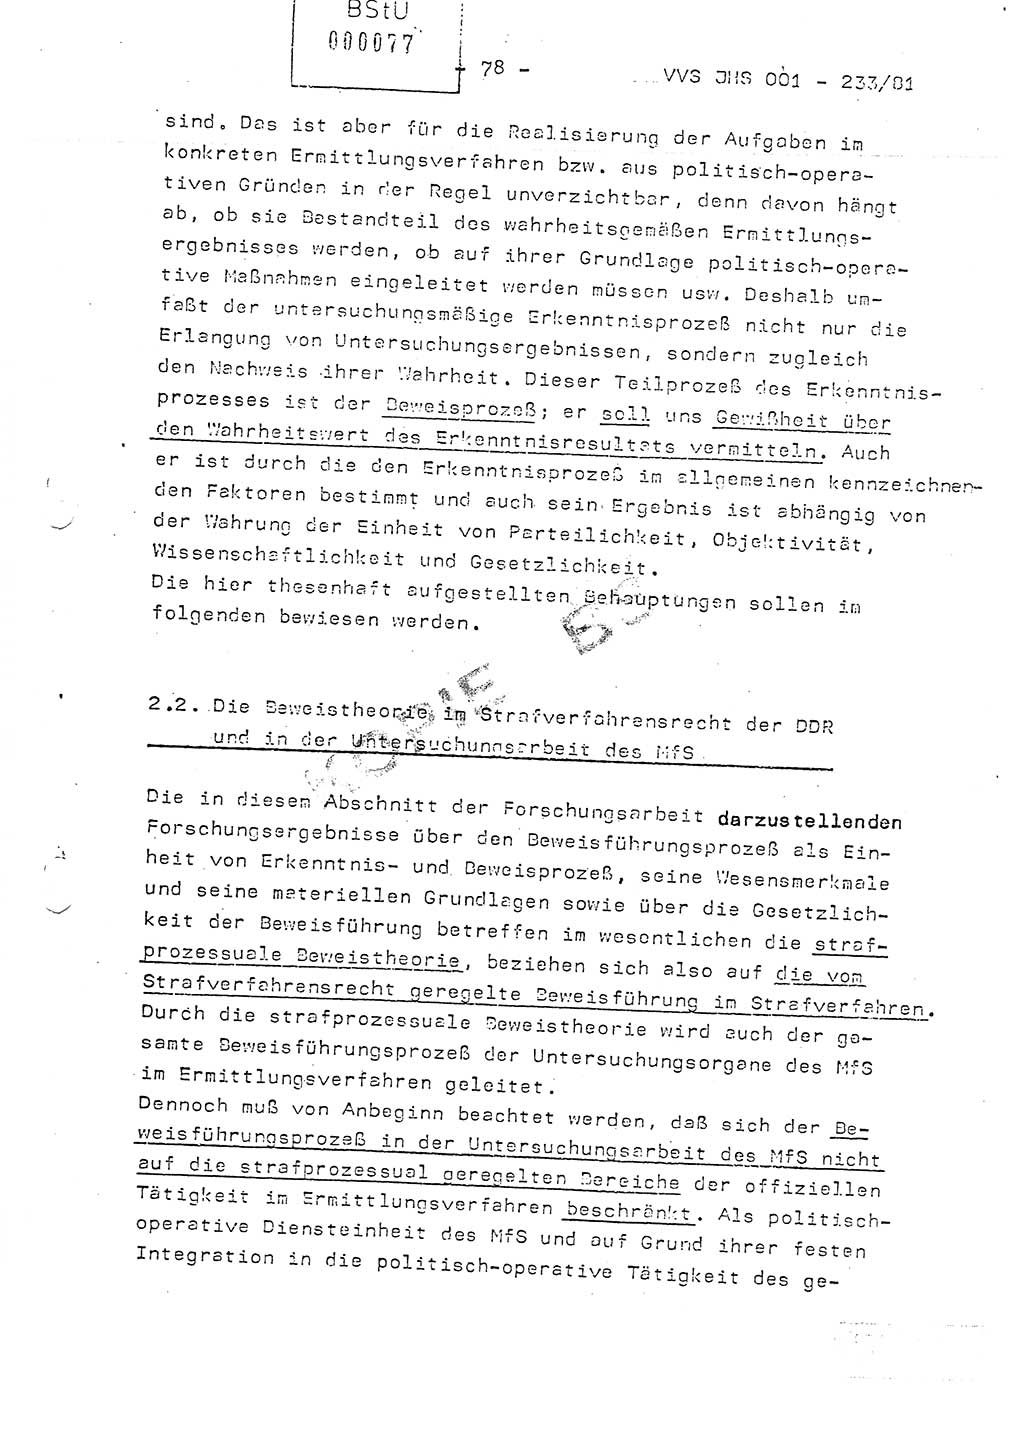 Dissertation Oberstleutnant Horst Zank (JHS), Oberstleutnant Dr. Karl-Heinz Knoblauch (JHS), Oberstleutnant Gustav-Adolf Kowalewski (HA Ⅸ), Oberstleutnant Wolfgang Plötner (HA Ⅸ), Ministerium für Staatssicherheit (MfS) [Deutsche Demokratische Republik (DDR)], Juristische Hochschule (JHS), Vertrauliche Verschlußsache (VVS) o001-233/81, Potsdam 1981, Blatt 78 (Diss. MfS DDR JHS VVS o001-233/81 1981, Bl. 78)